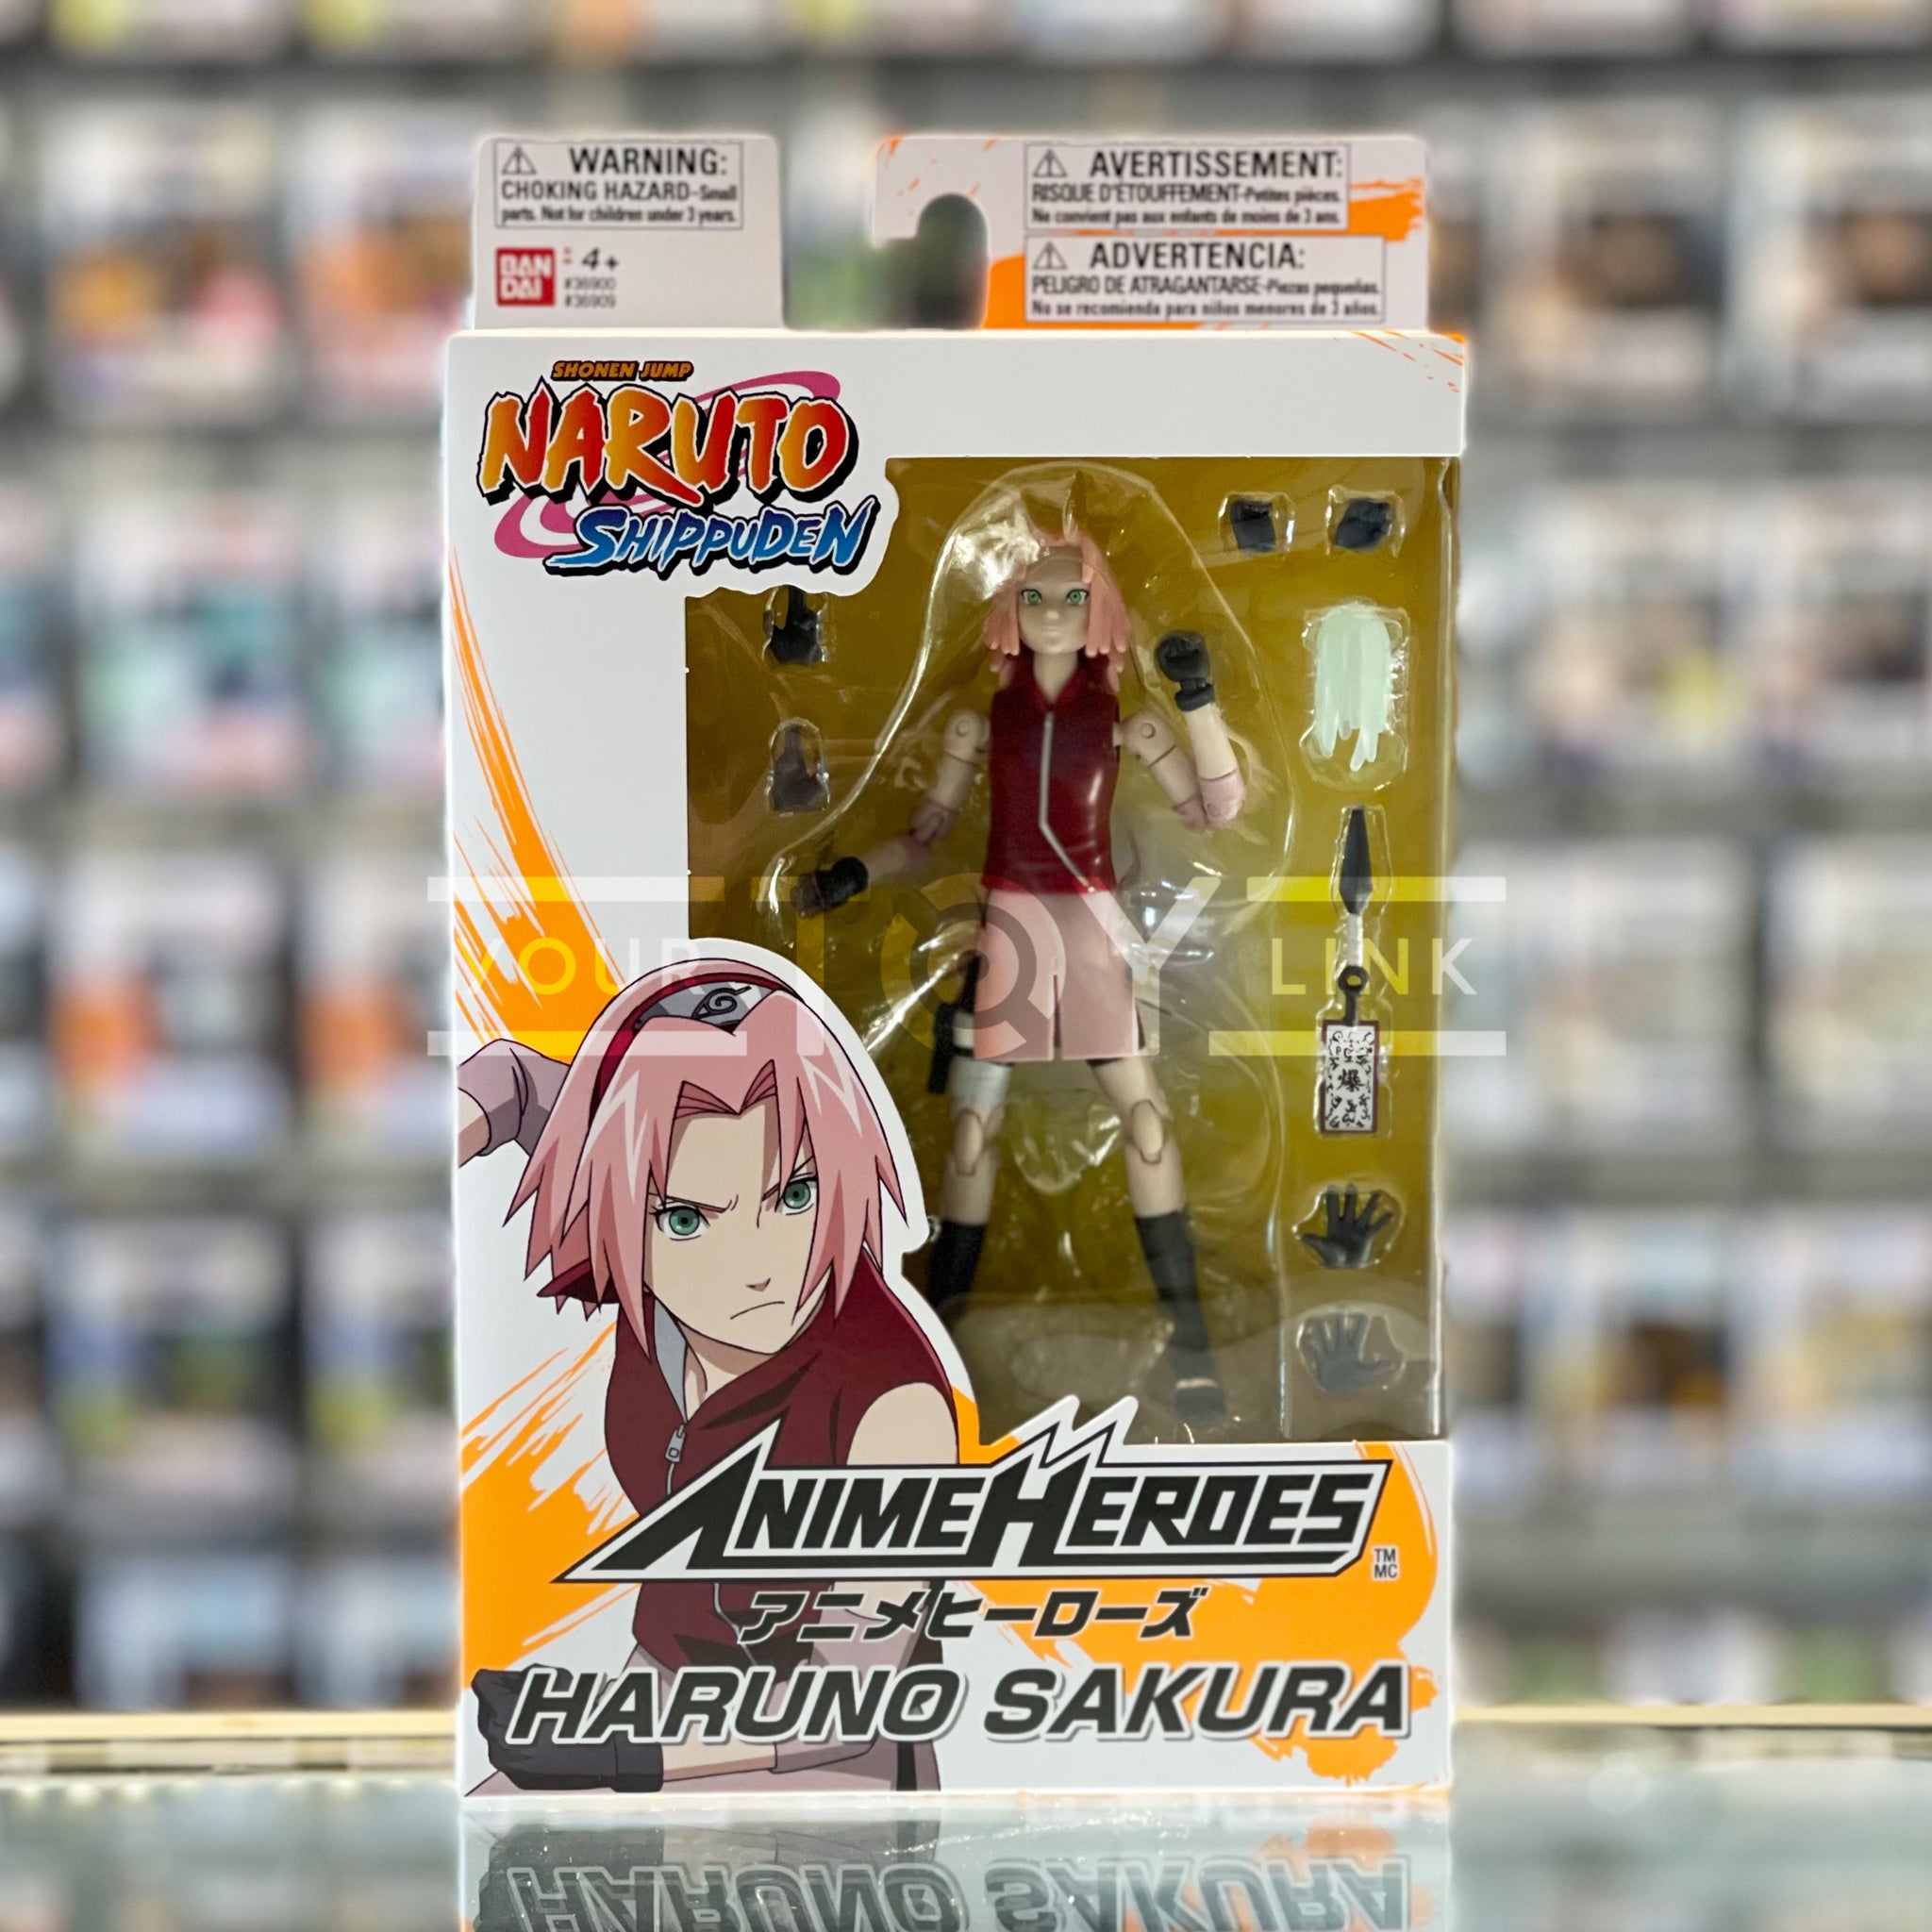  ANIME HEROES - Naruto - Sakura Haruno Action Figure